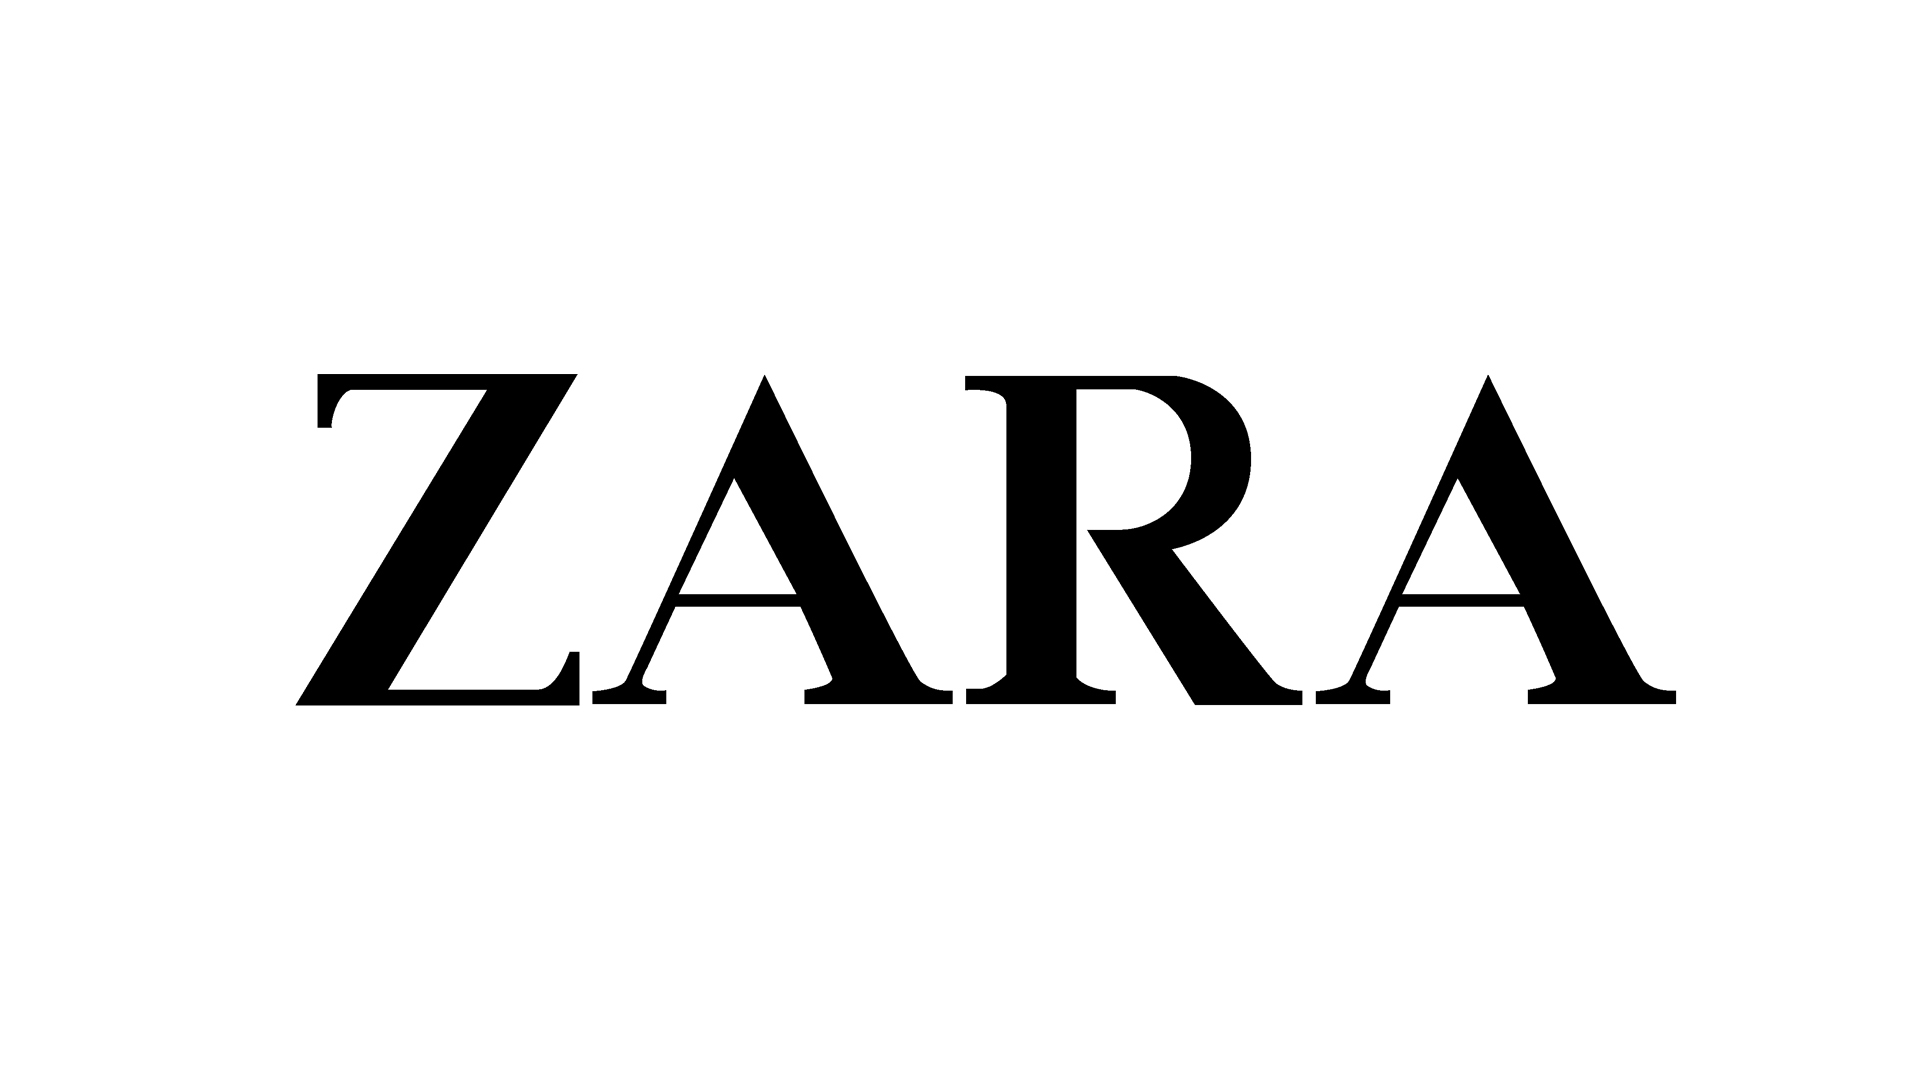 Х зарам. Zara логотип прозрачный.